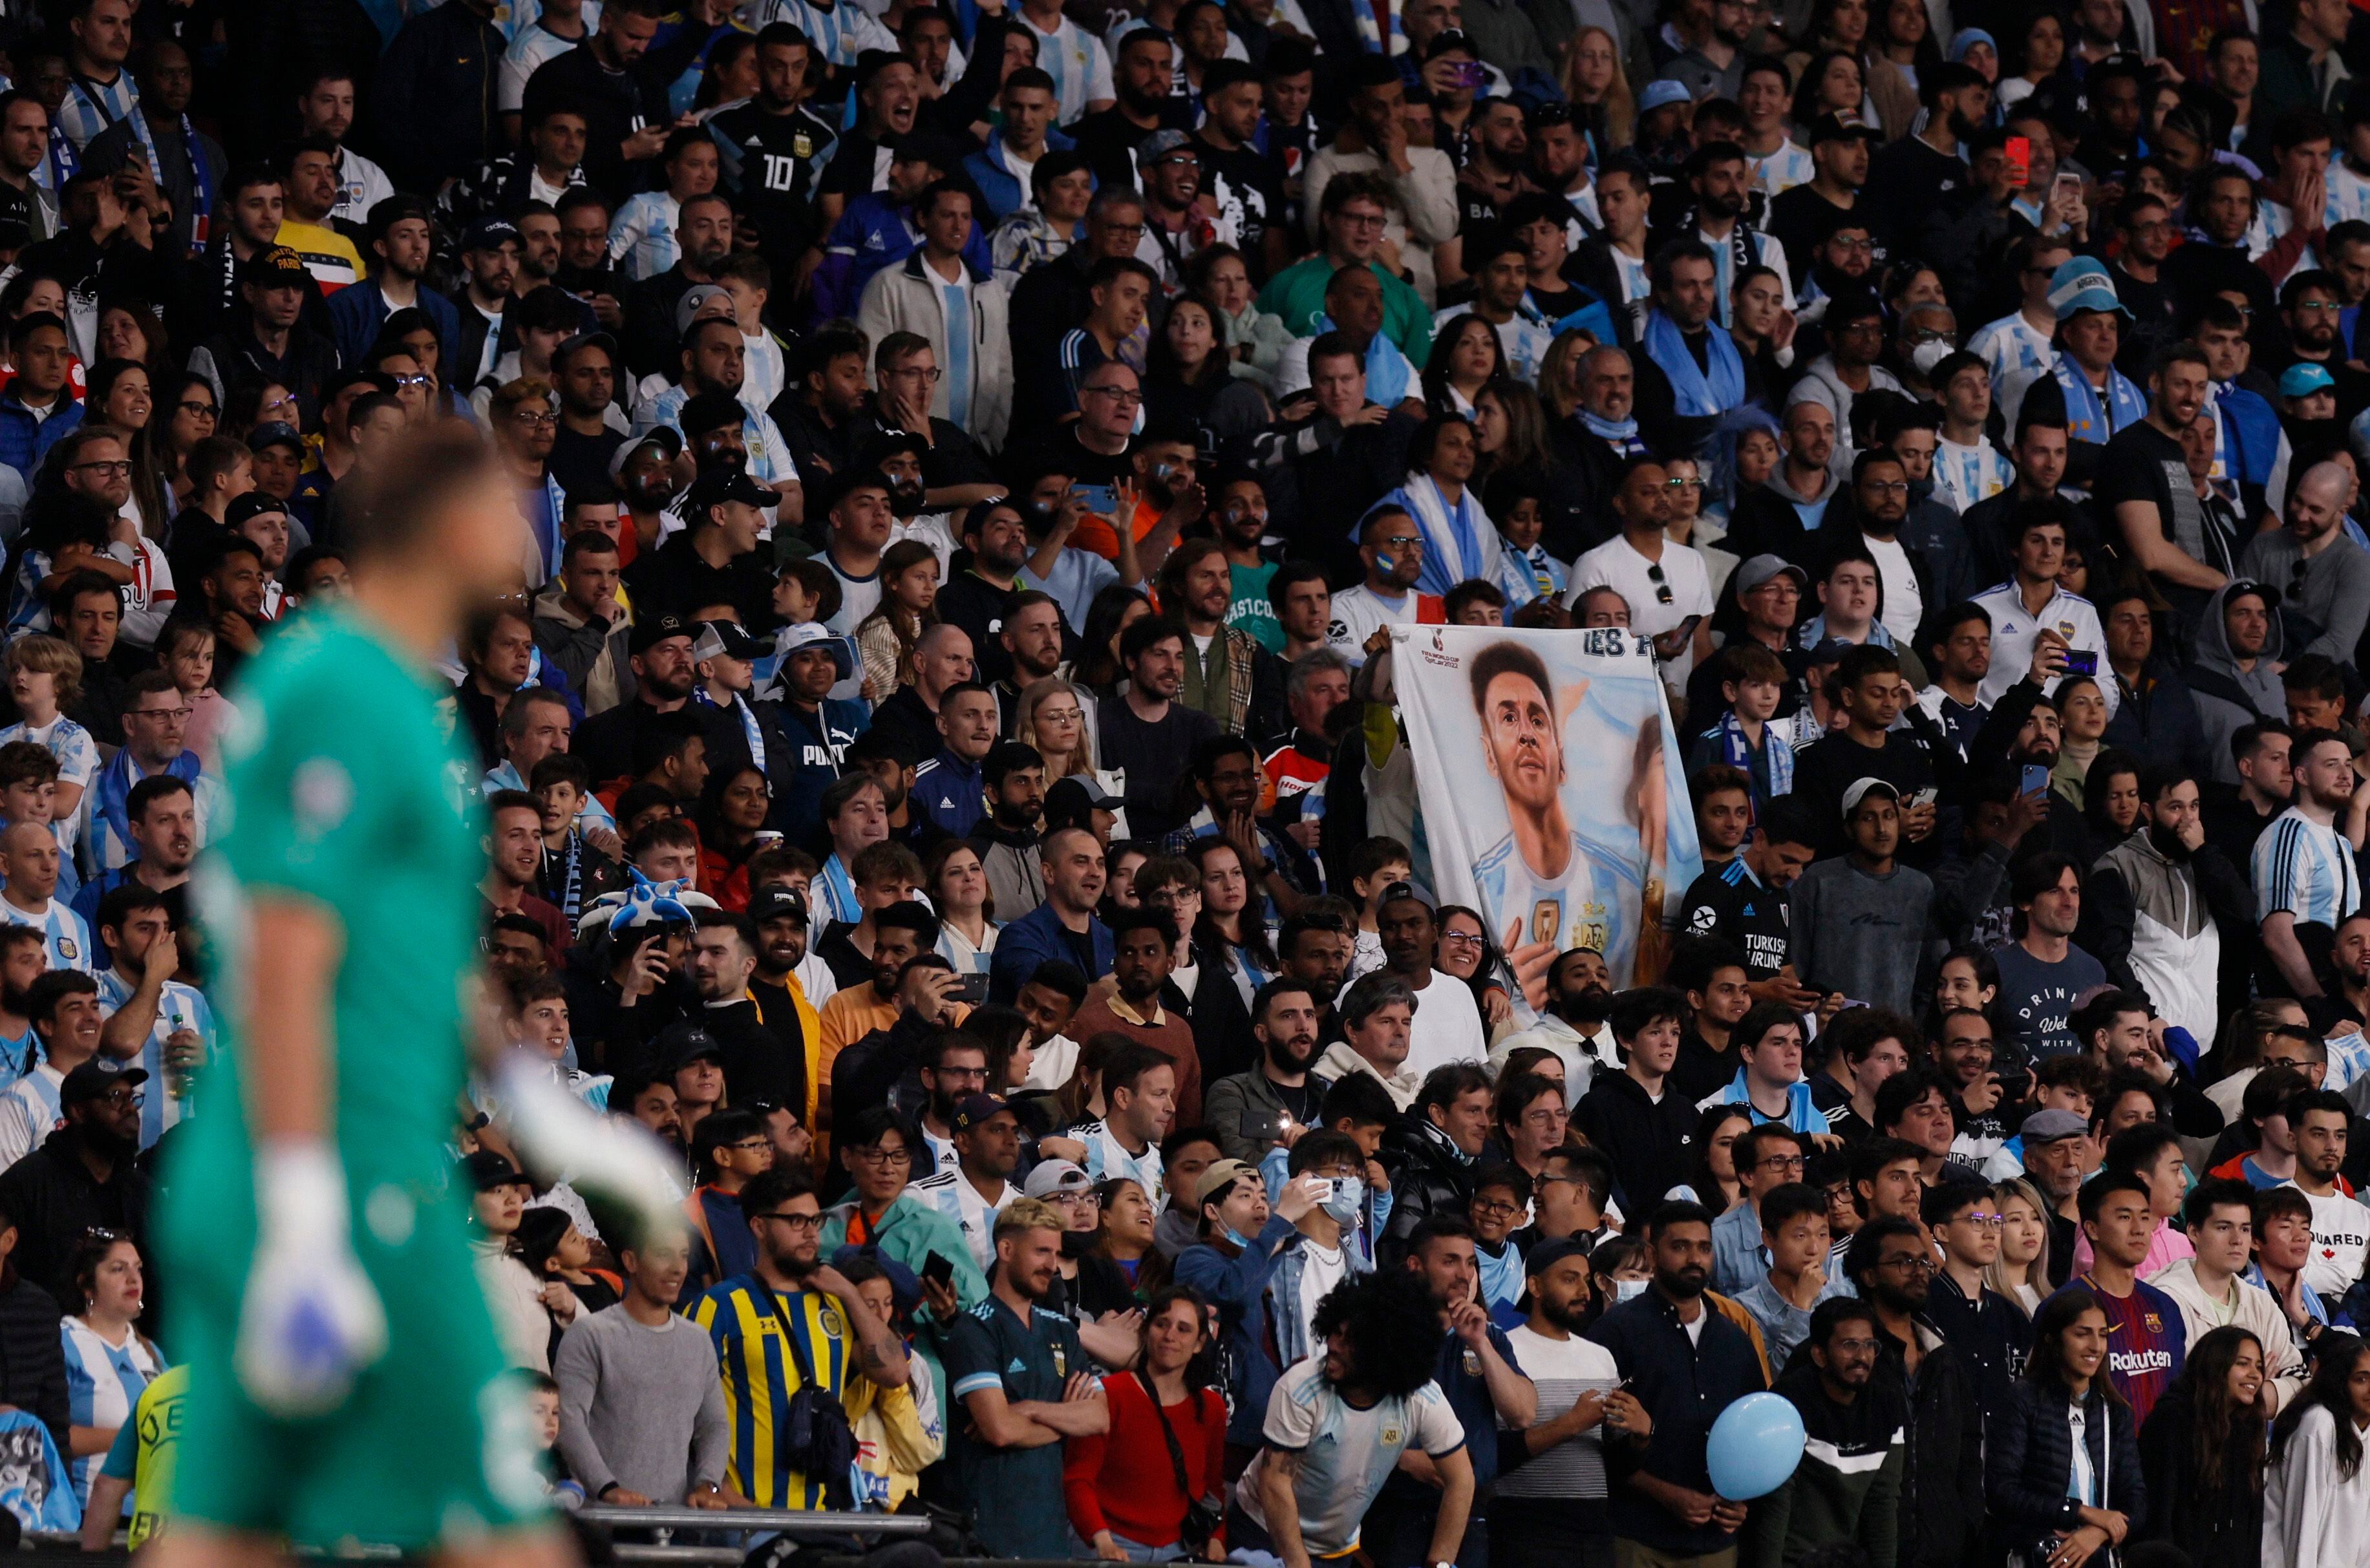 La bandera de Messi adorna la tribuna detrás de Donnarumma (REUTERS/Andrew Couldridge)